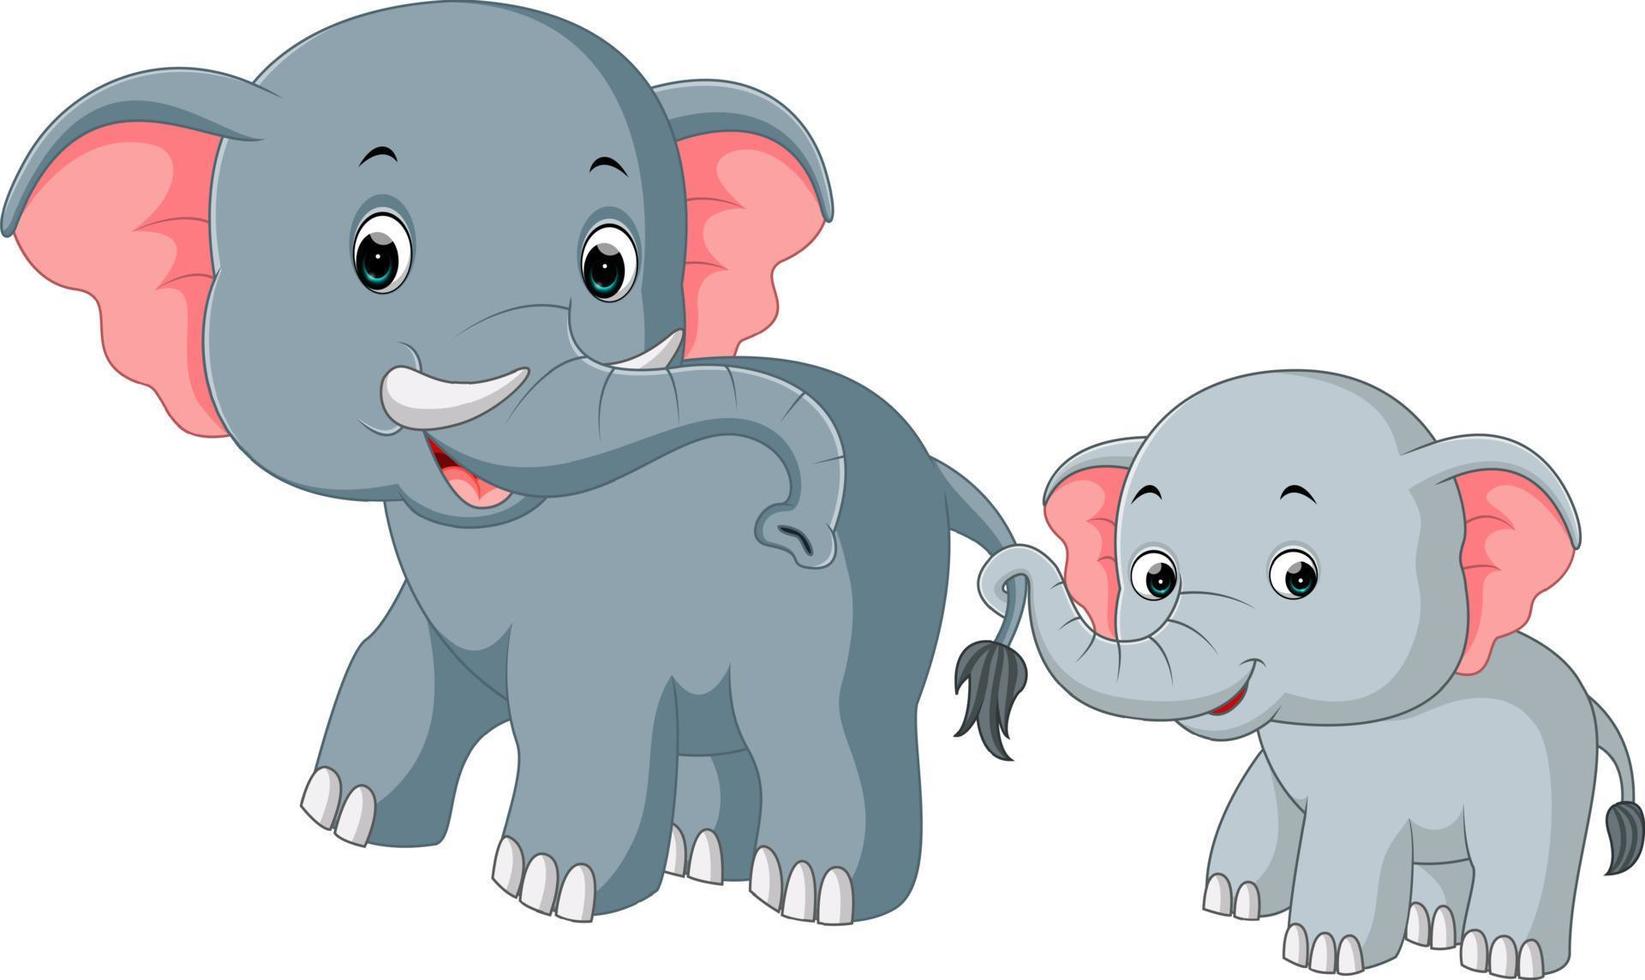 Cute elephant cartoon vector